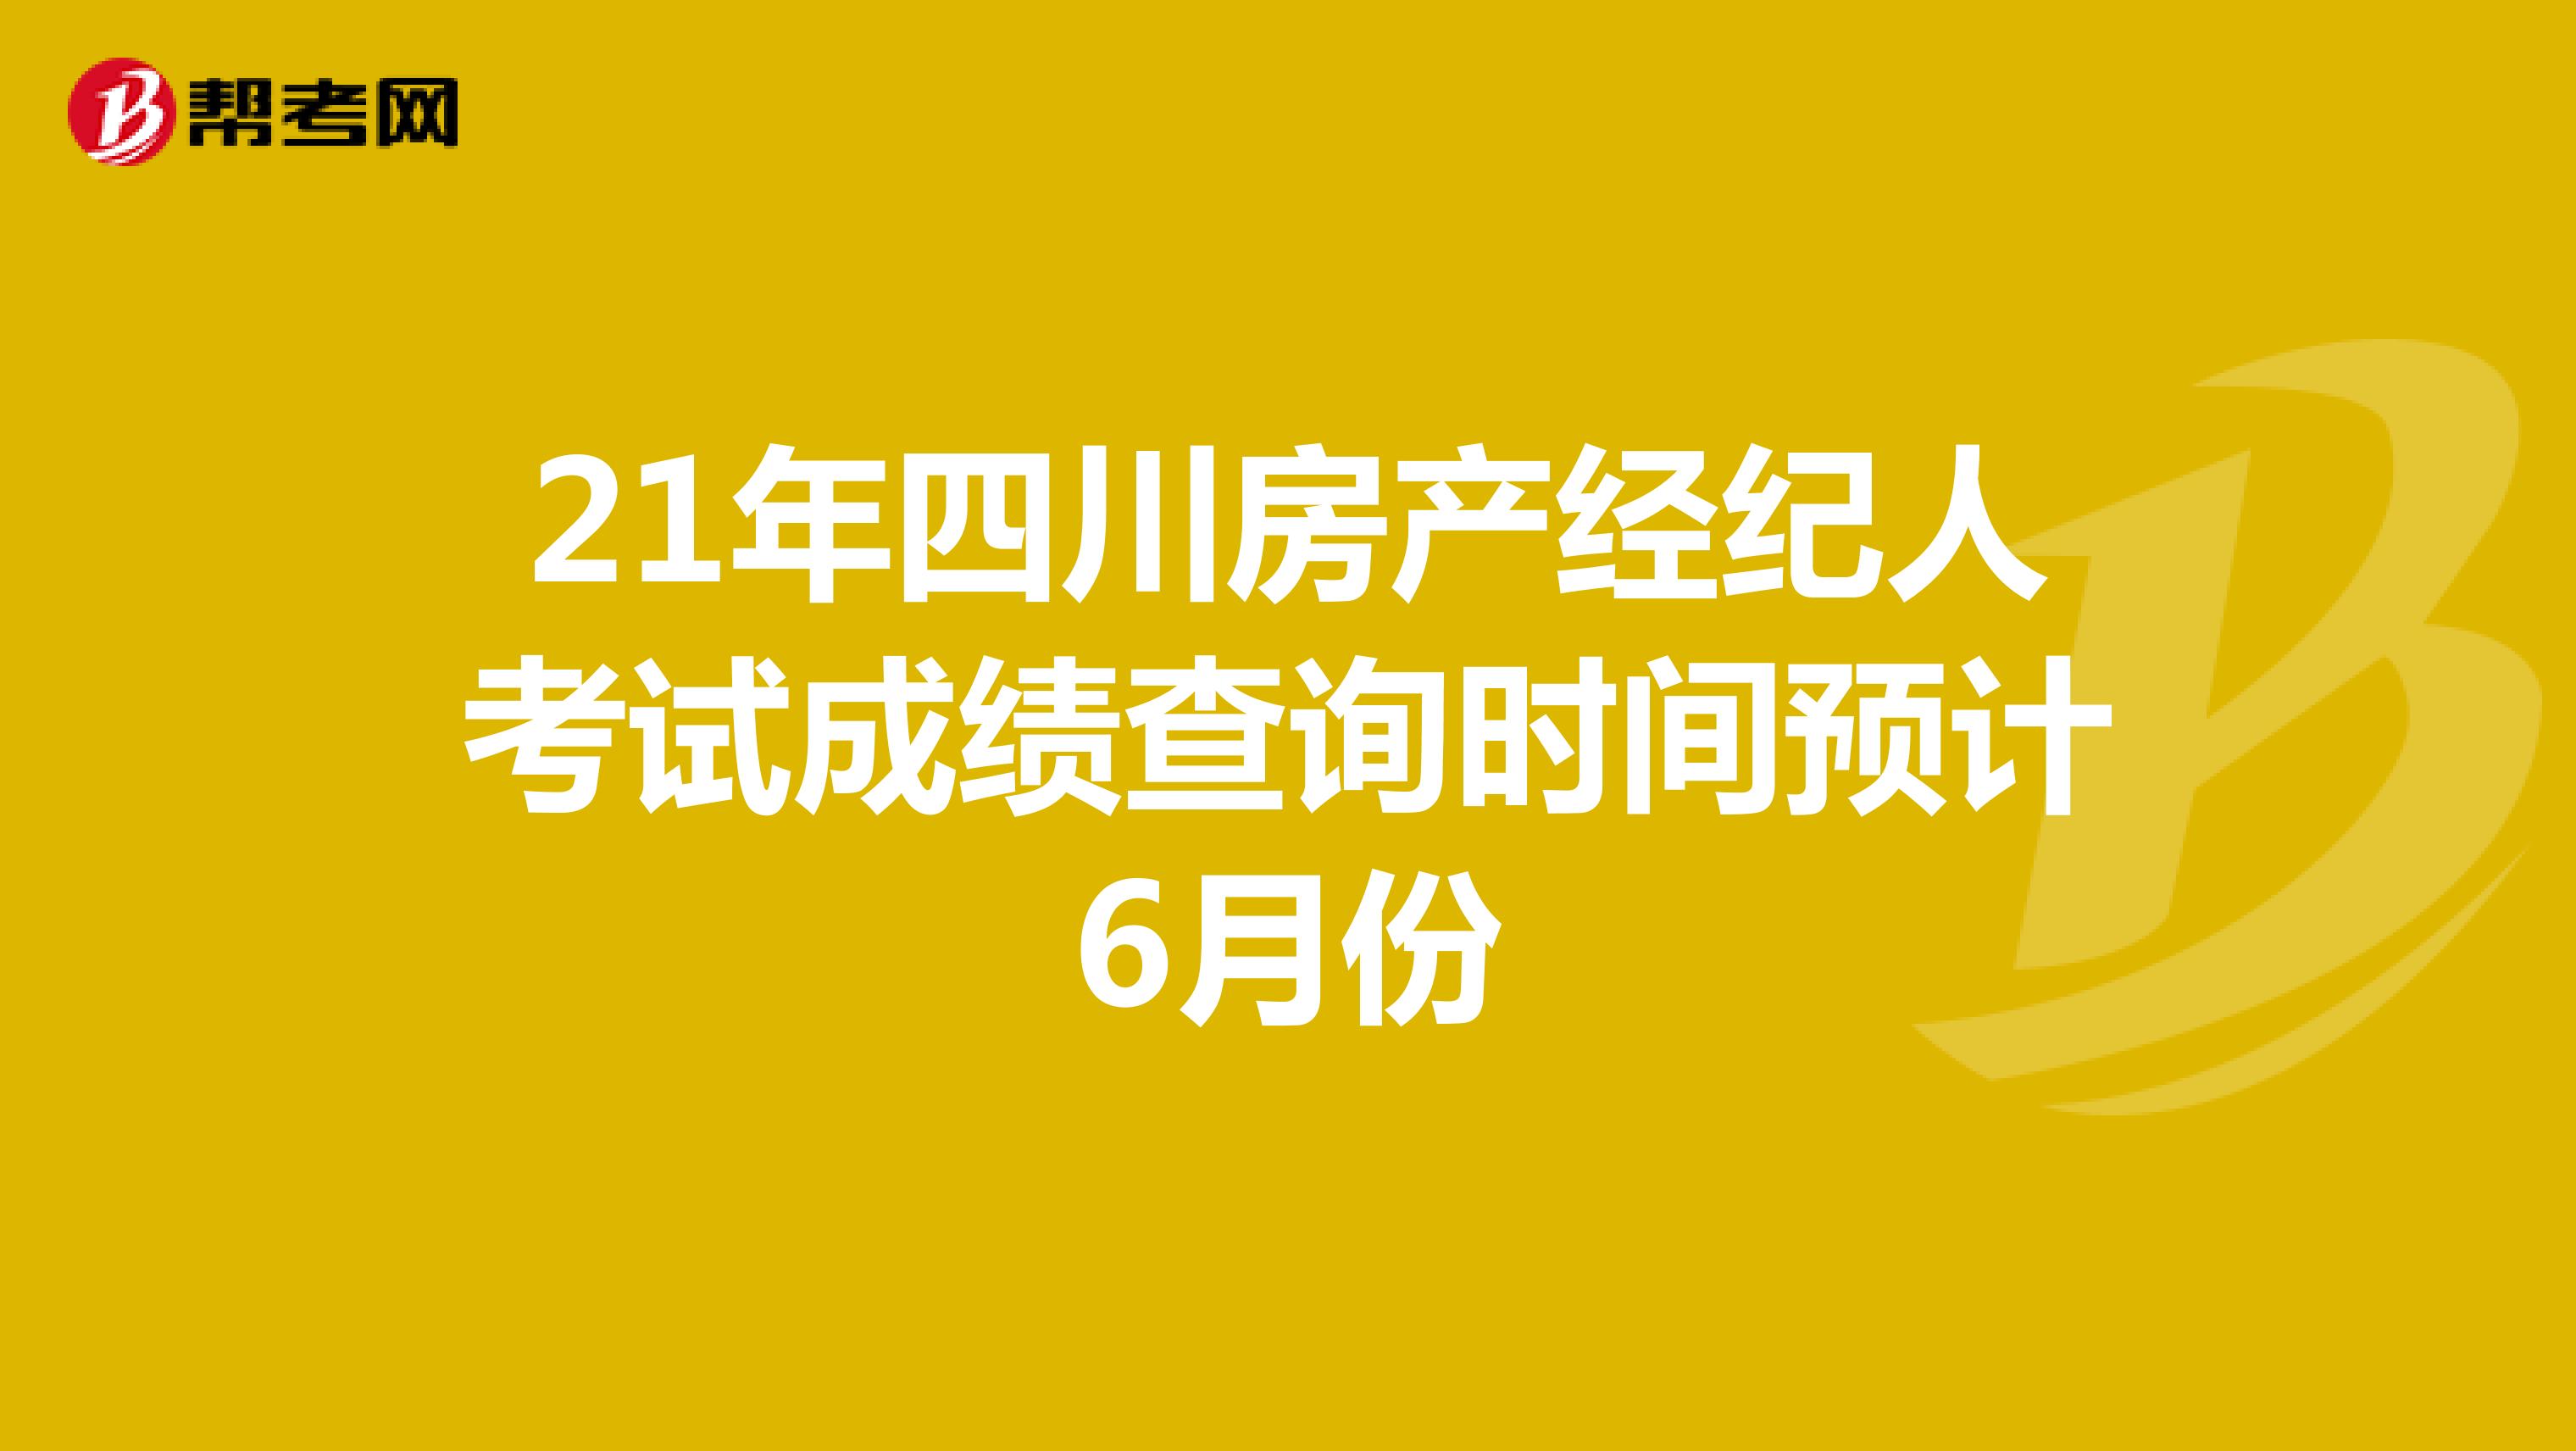 21年四川房产经纪人考试成绩查询时间预计6月份